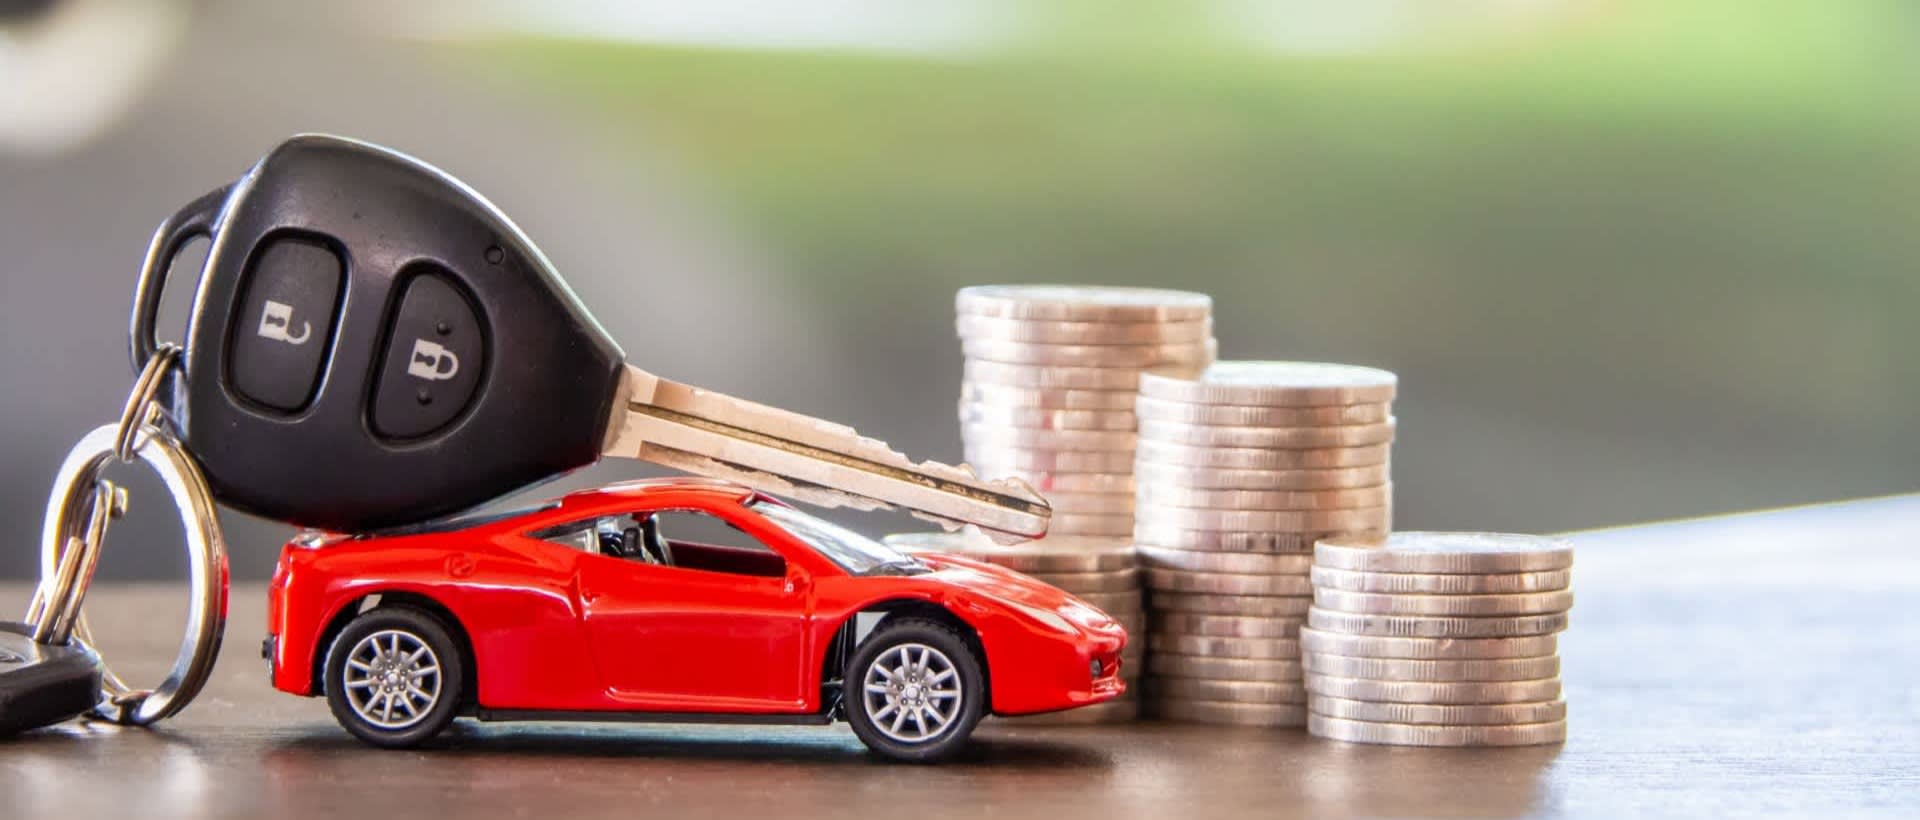 Как лучше купить машину в кредит или автокредит — что выгоднее в 2021 году